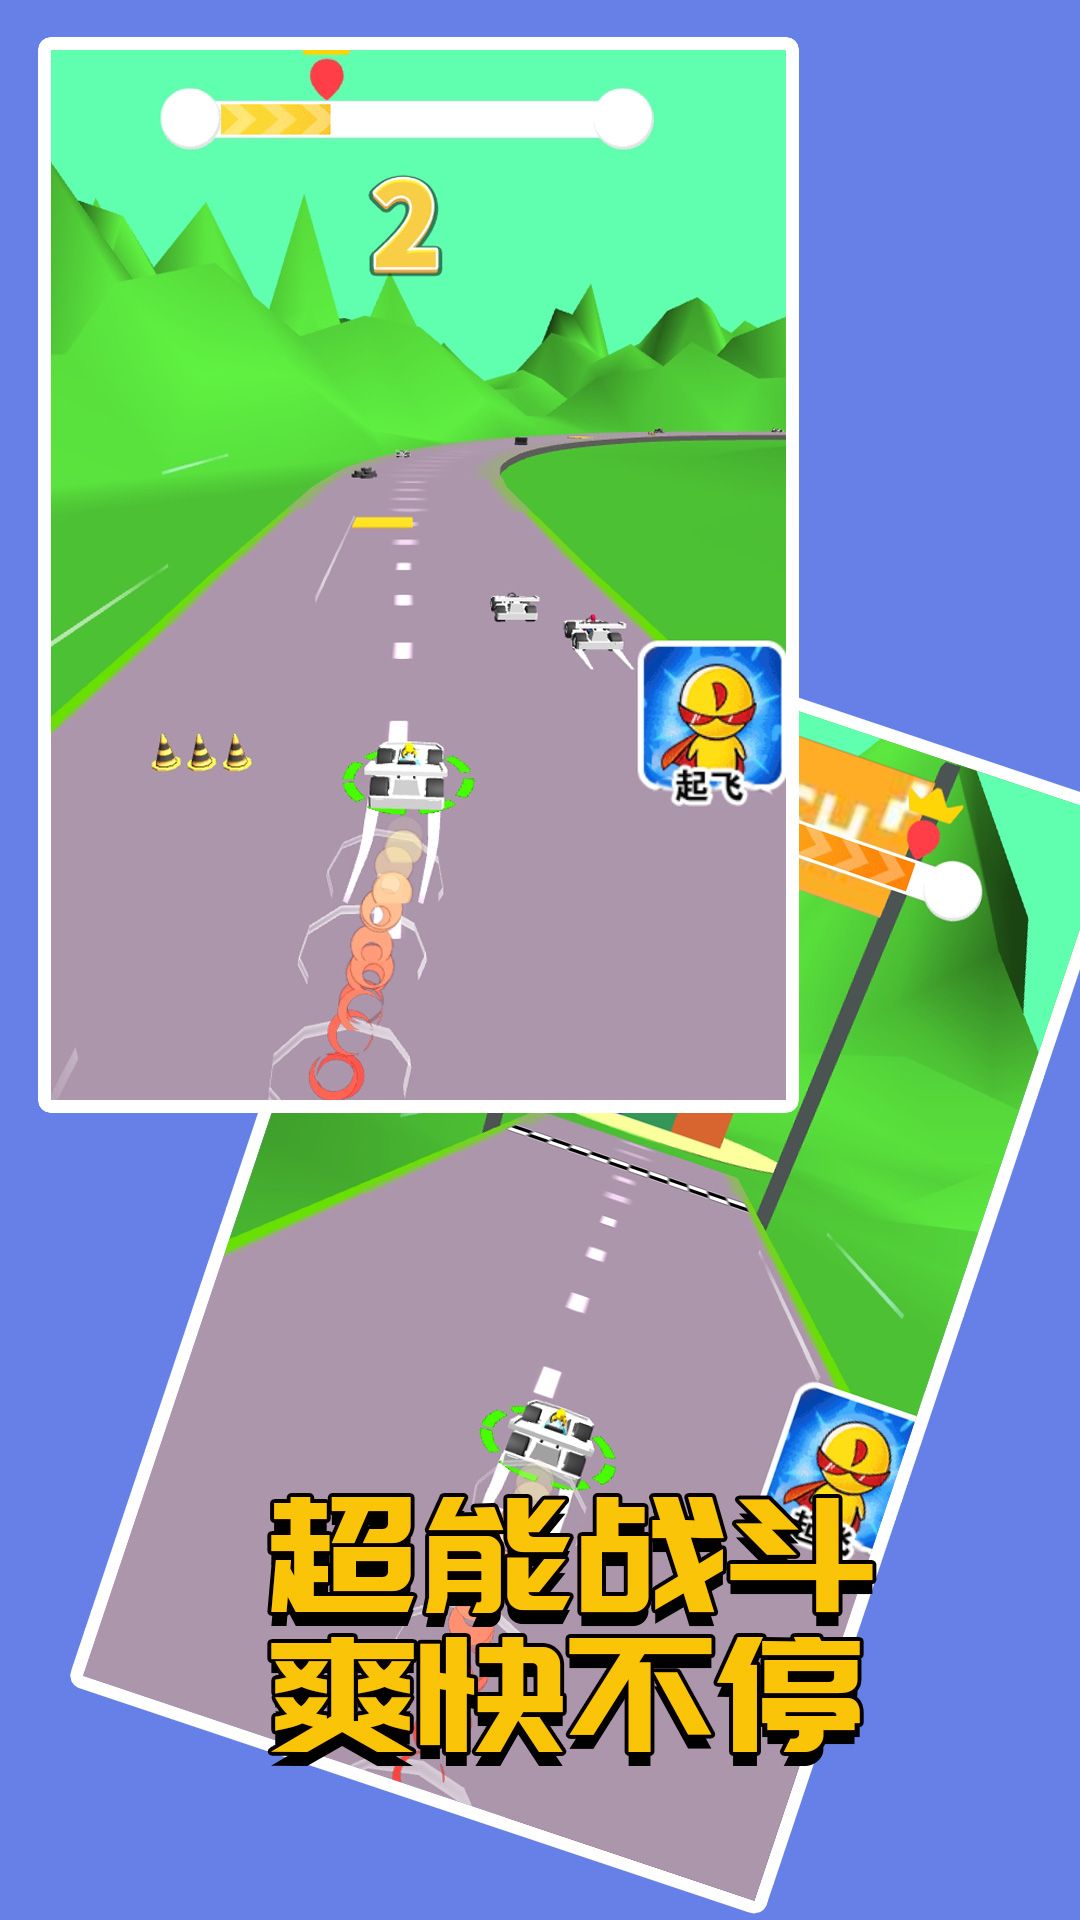 赛车接力赛游戏下载官方版图片1